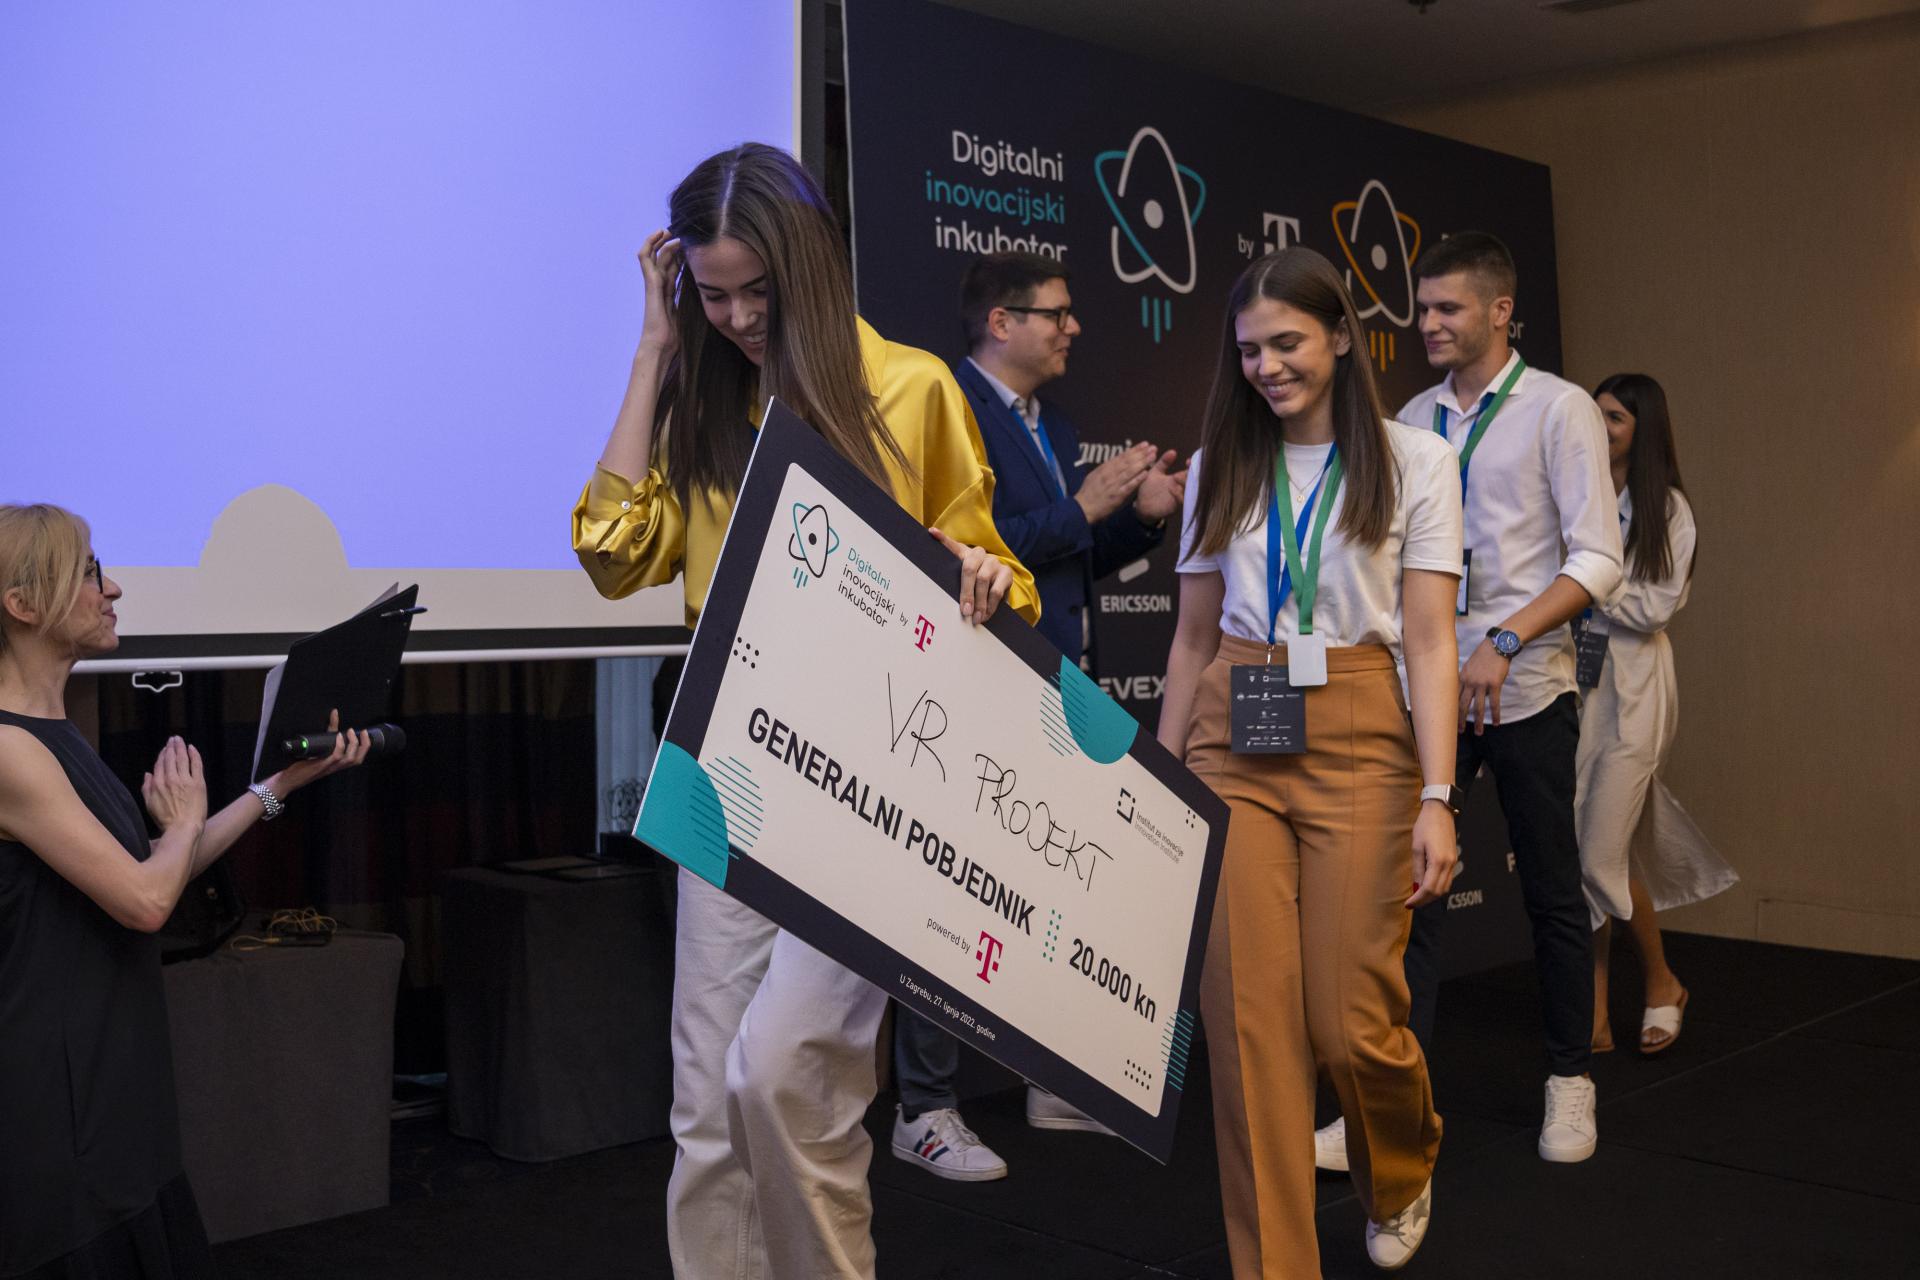 Prošlogodišnji pobjednici Digitalnog inovacijskog inkubatora podijelili iskustva u osvajanju titule najboljih mladih inovatora